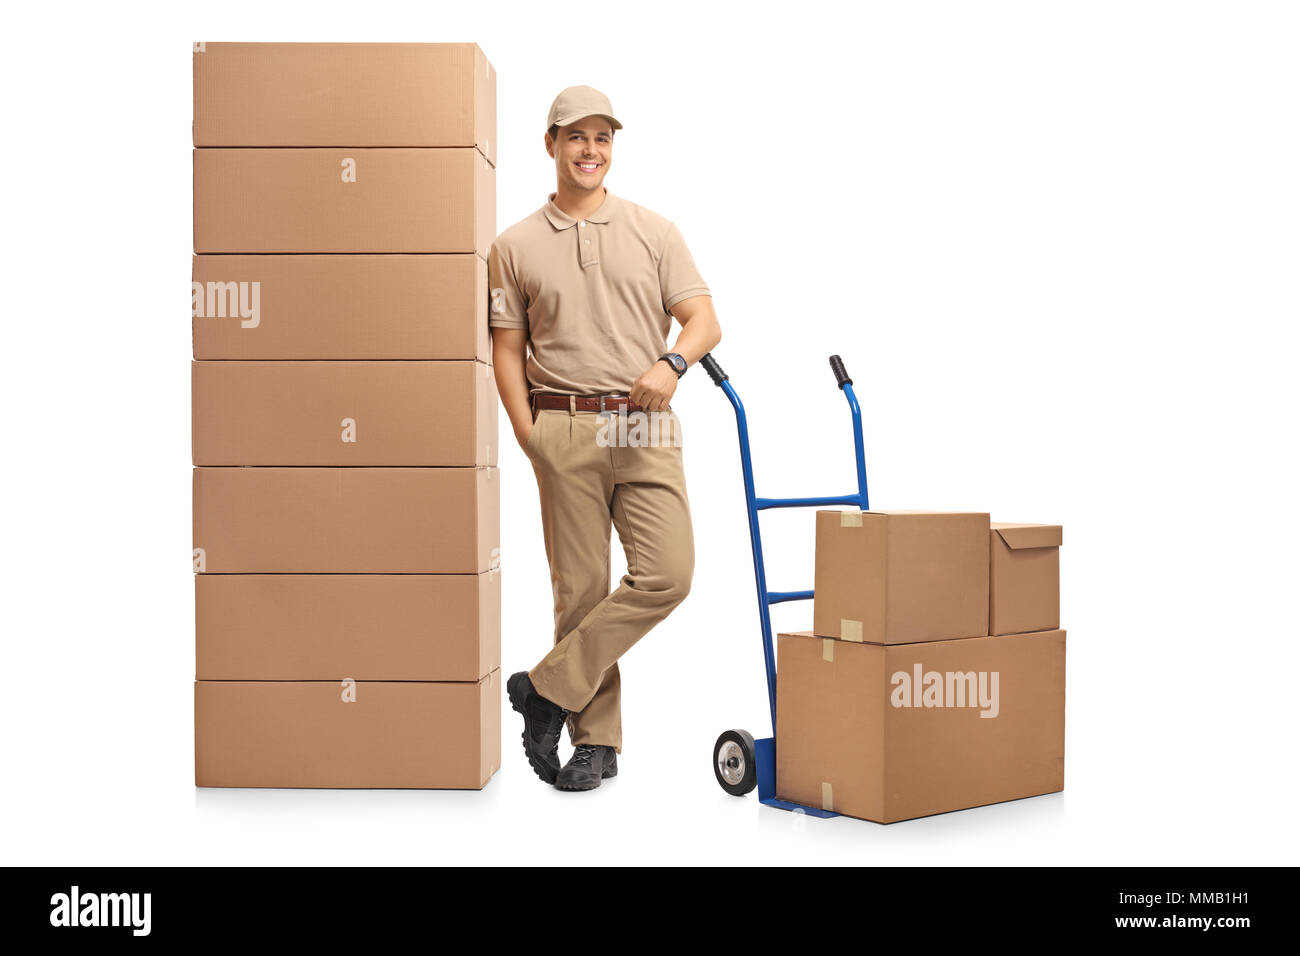 A piena lunghezza Ritratto di un uomo di consegna con un carrello elevatore a mano appoggiata su una pila di scatole isolate su sfondo bianco Foto Stock